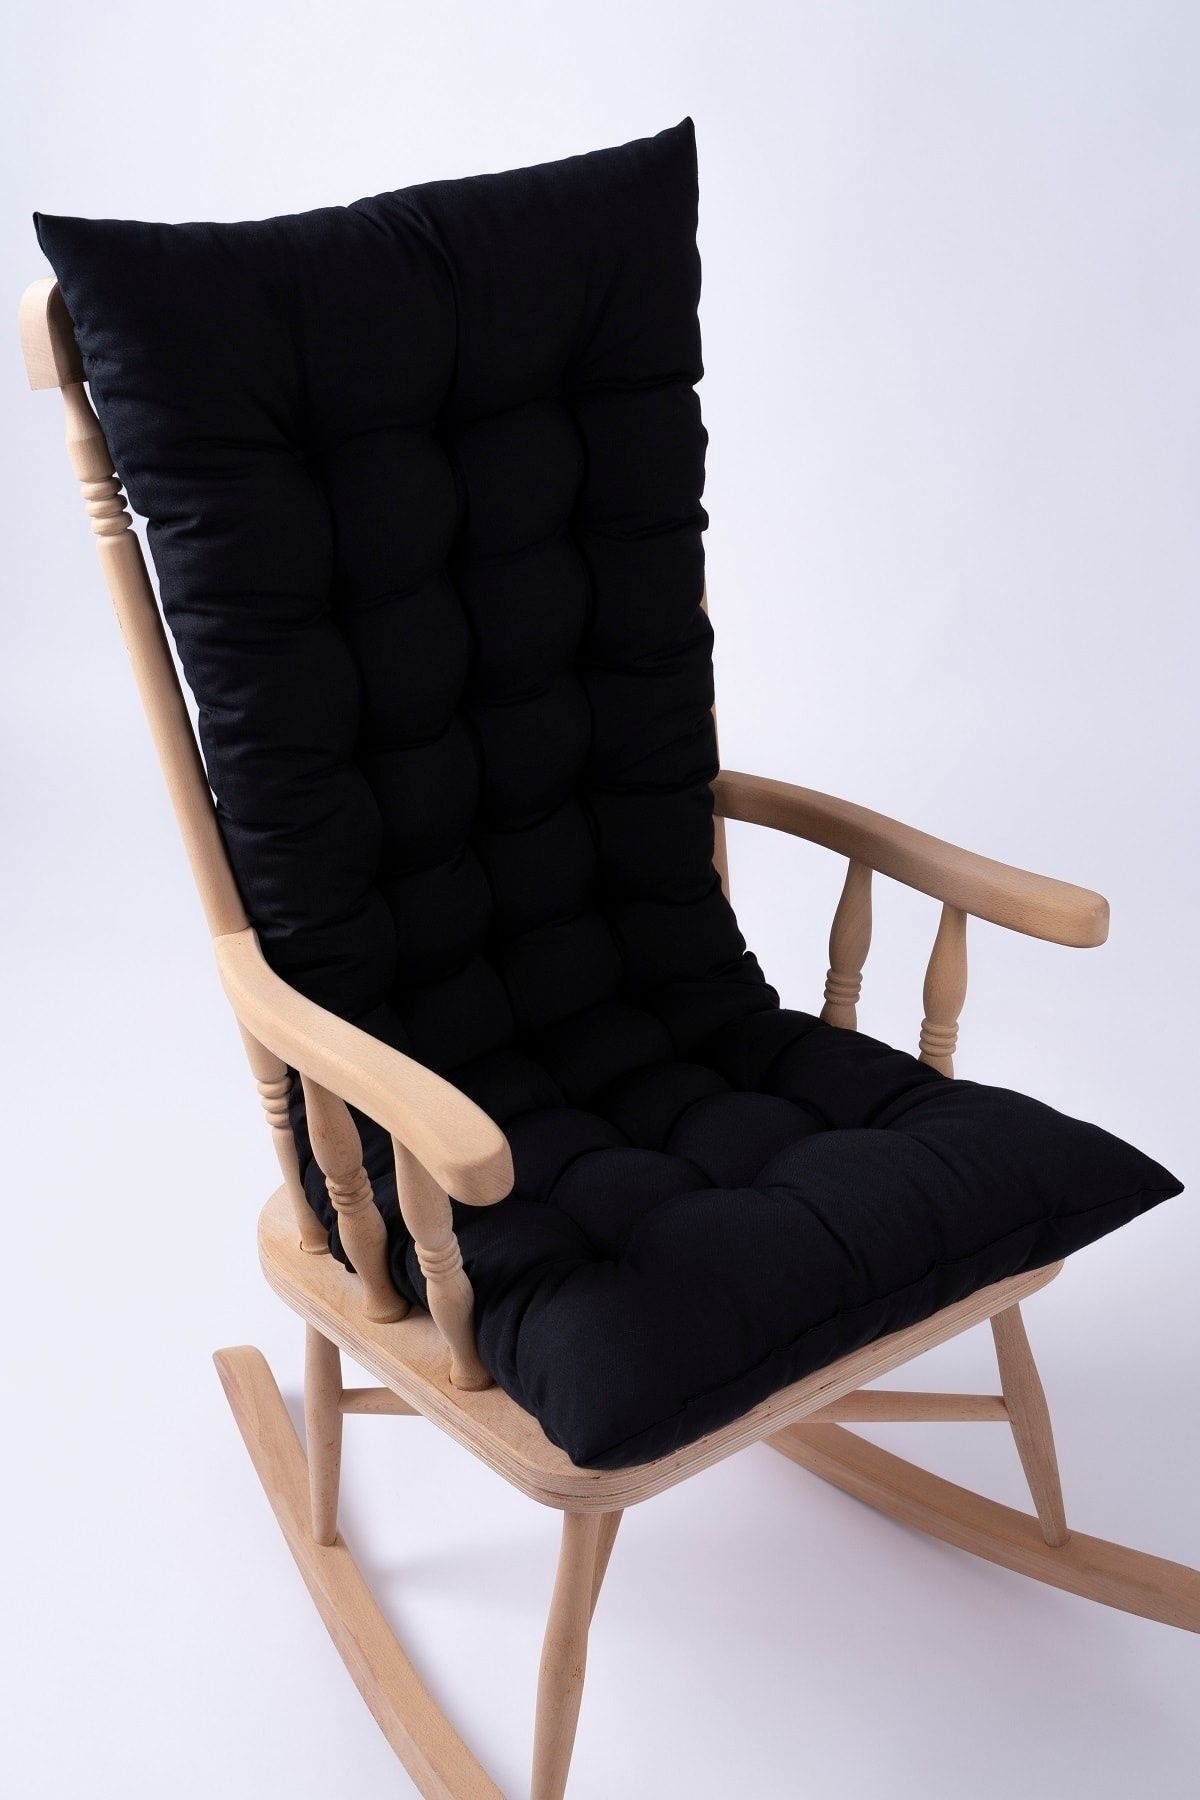 ALTINPAMUK Selen Lüx Sallanan Sandalye, Bank, Salıncak Minderi 120x50cm Siyah (SADECE MİNDER)